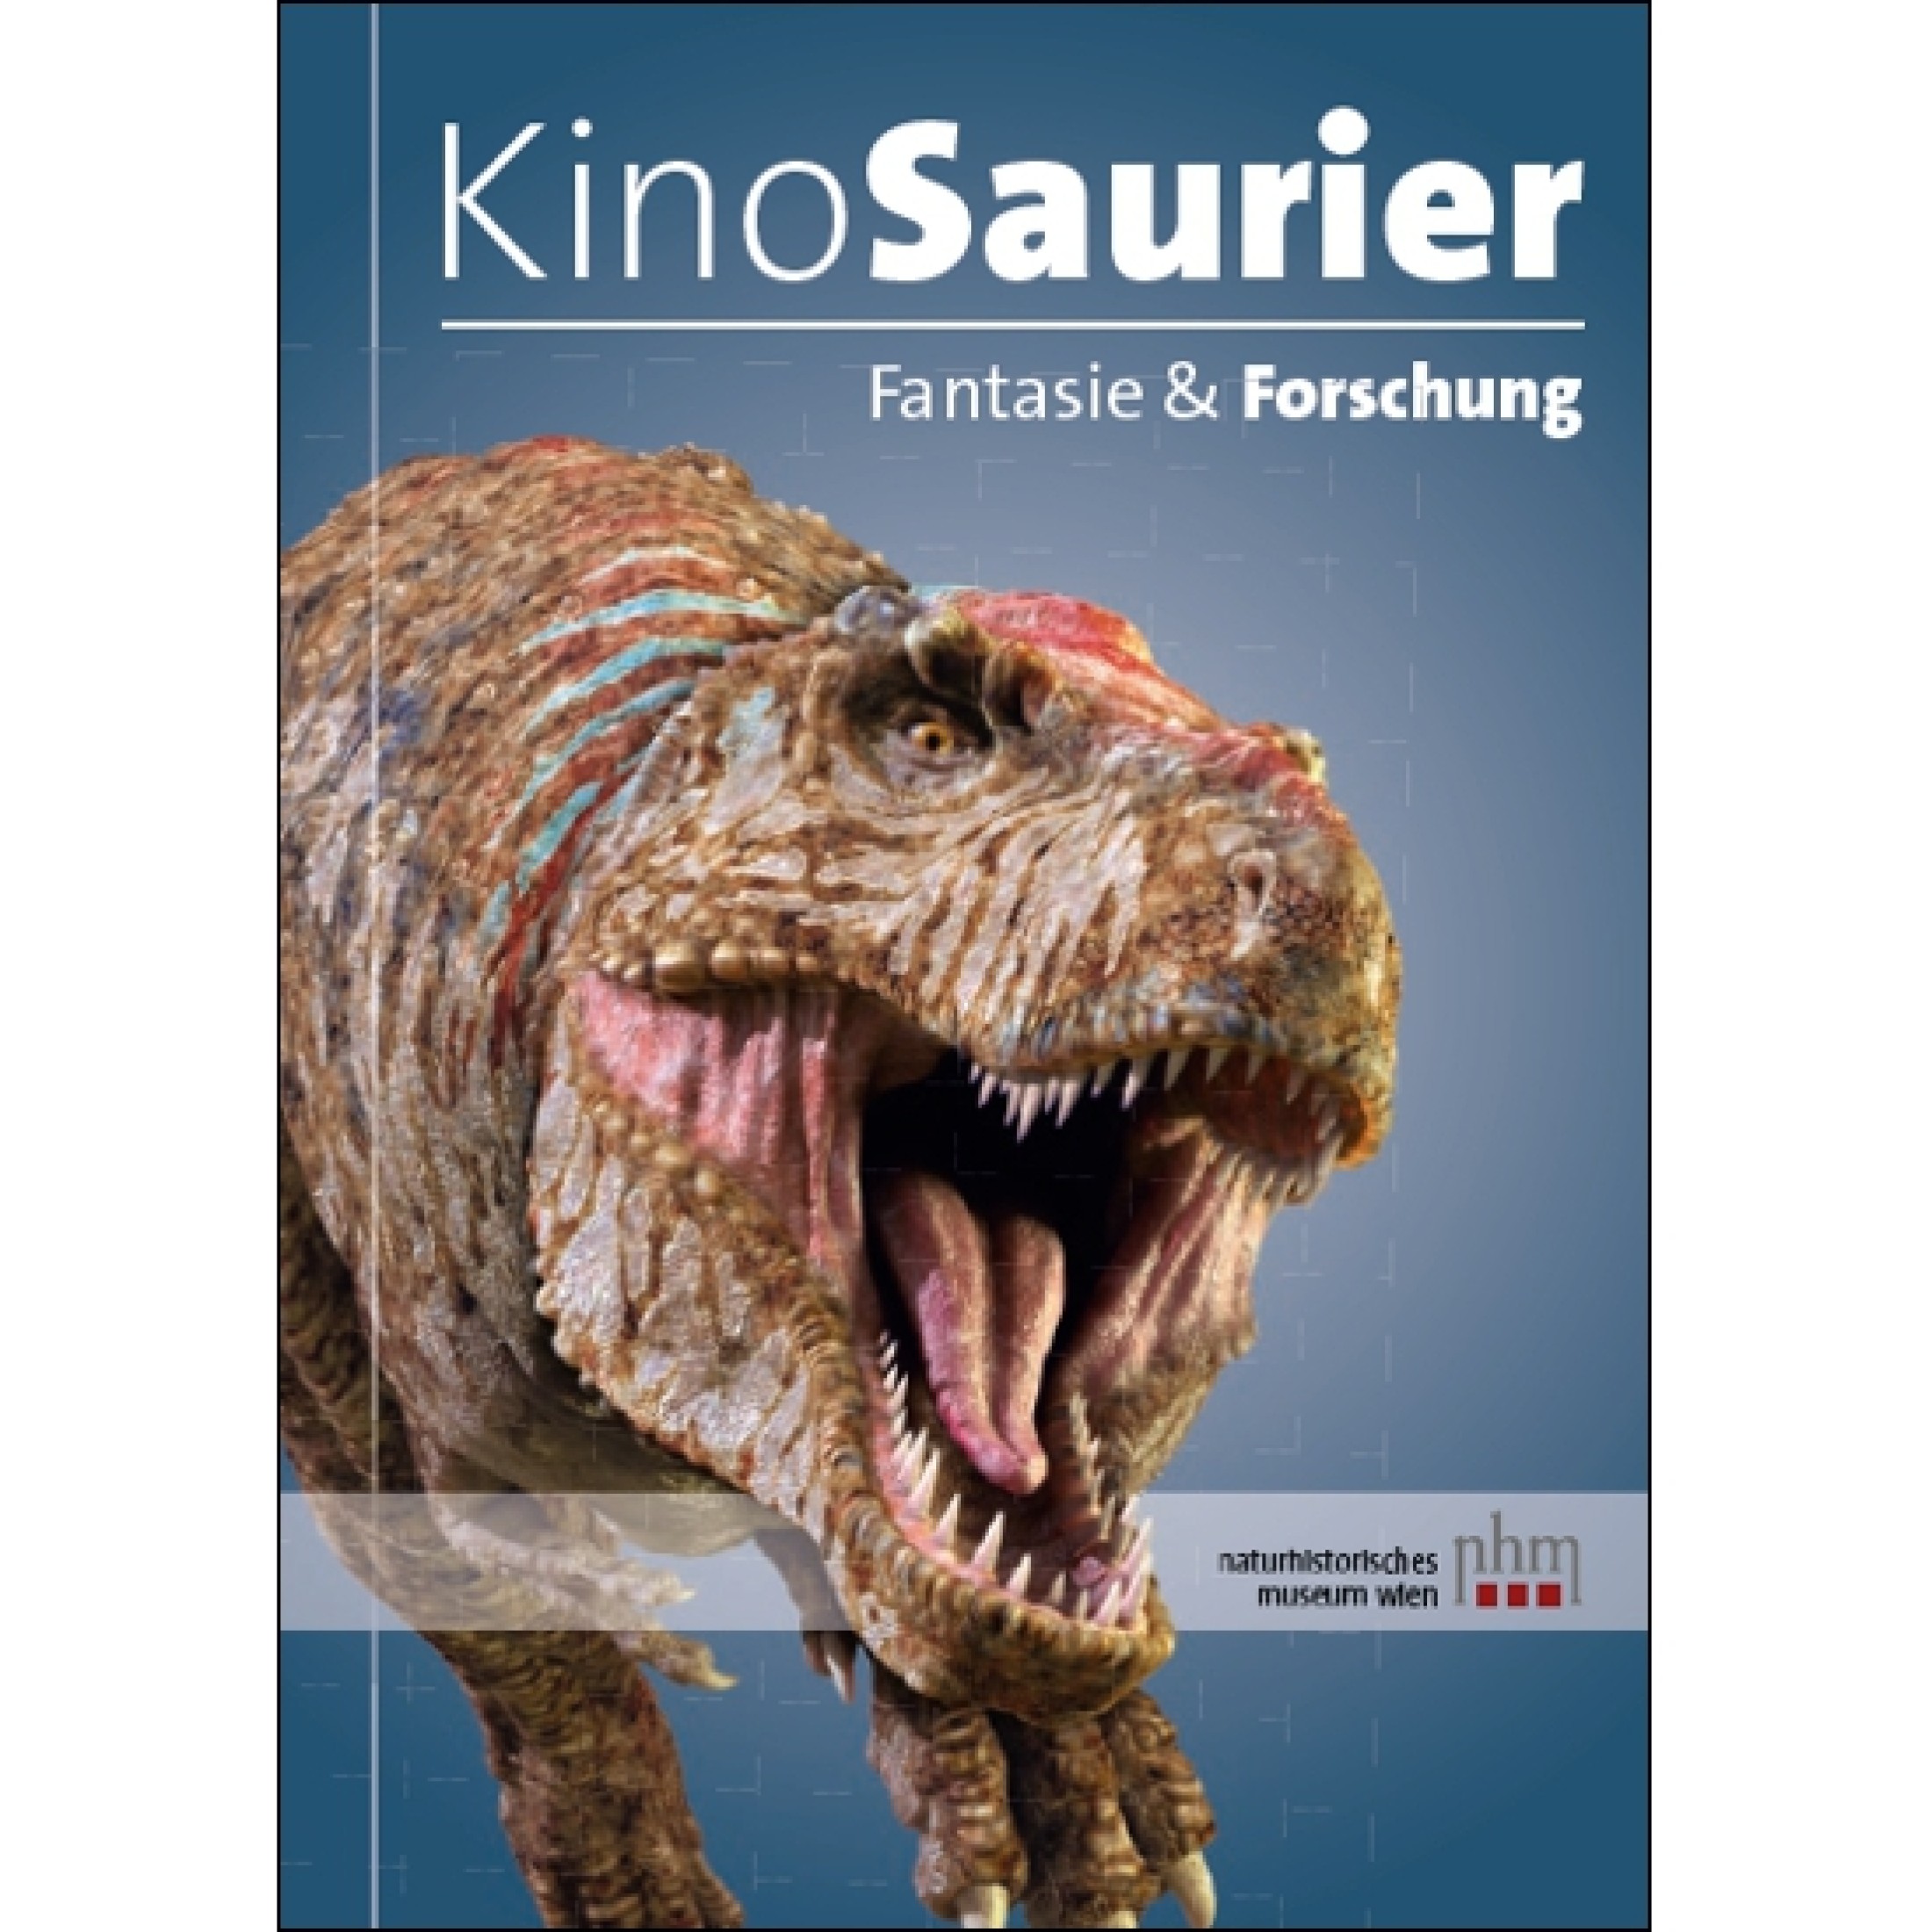 : Cover-Bild der Broschüre "KinoSaurier"